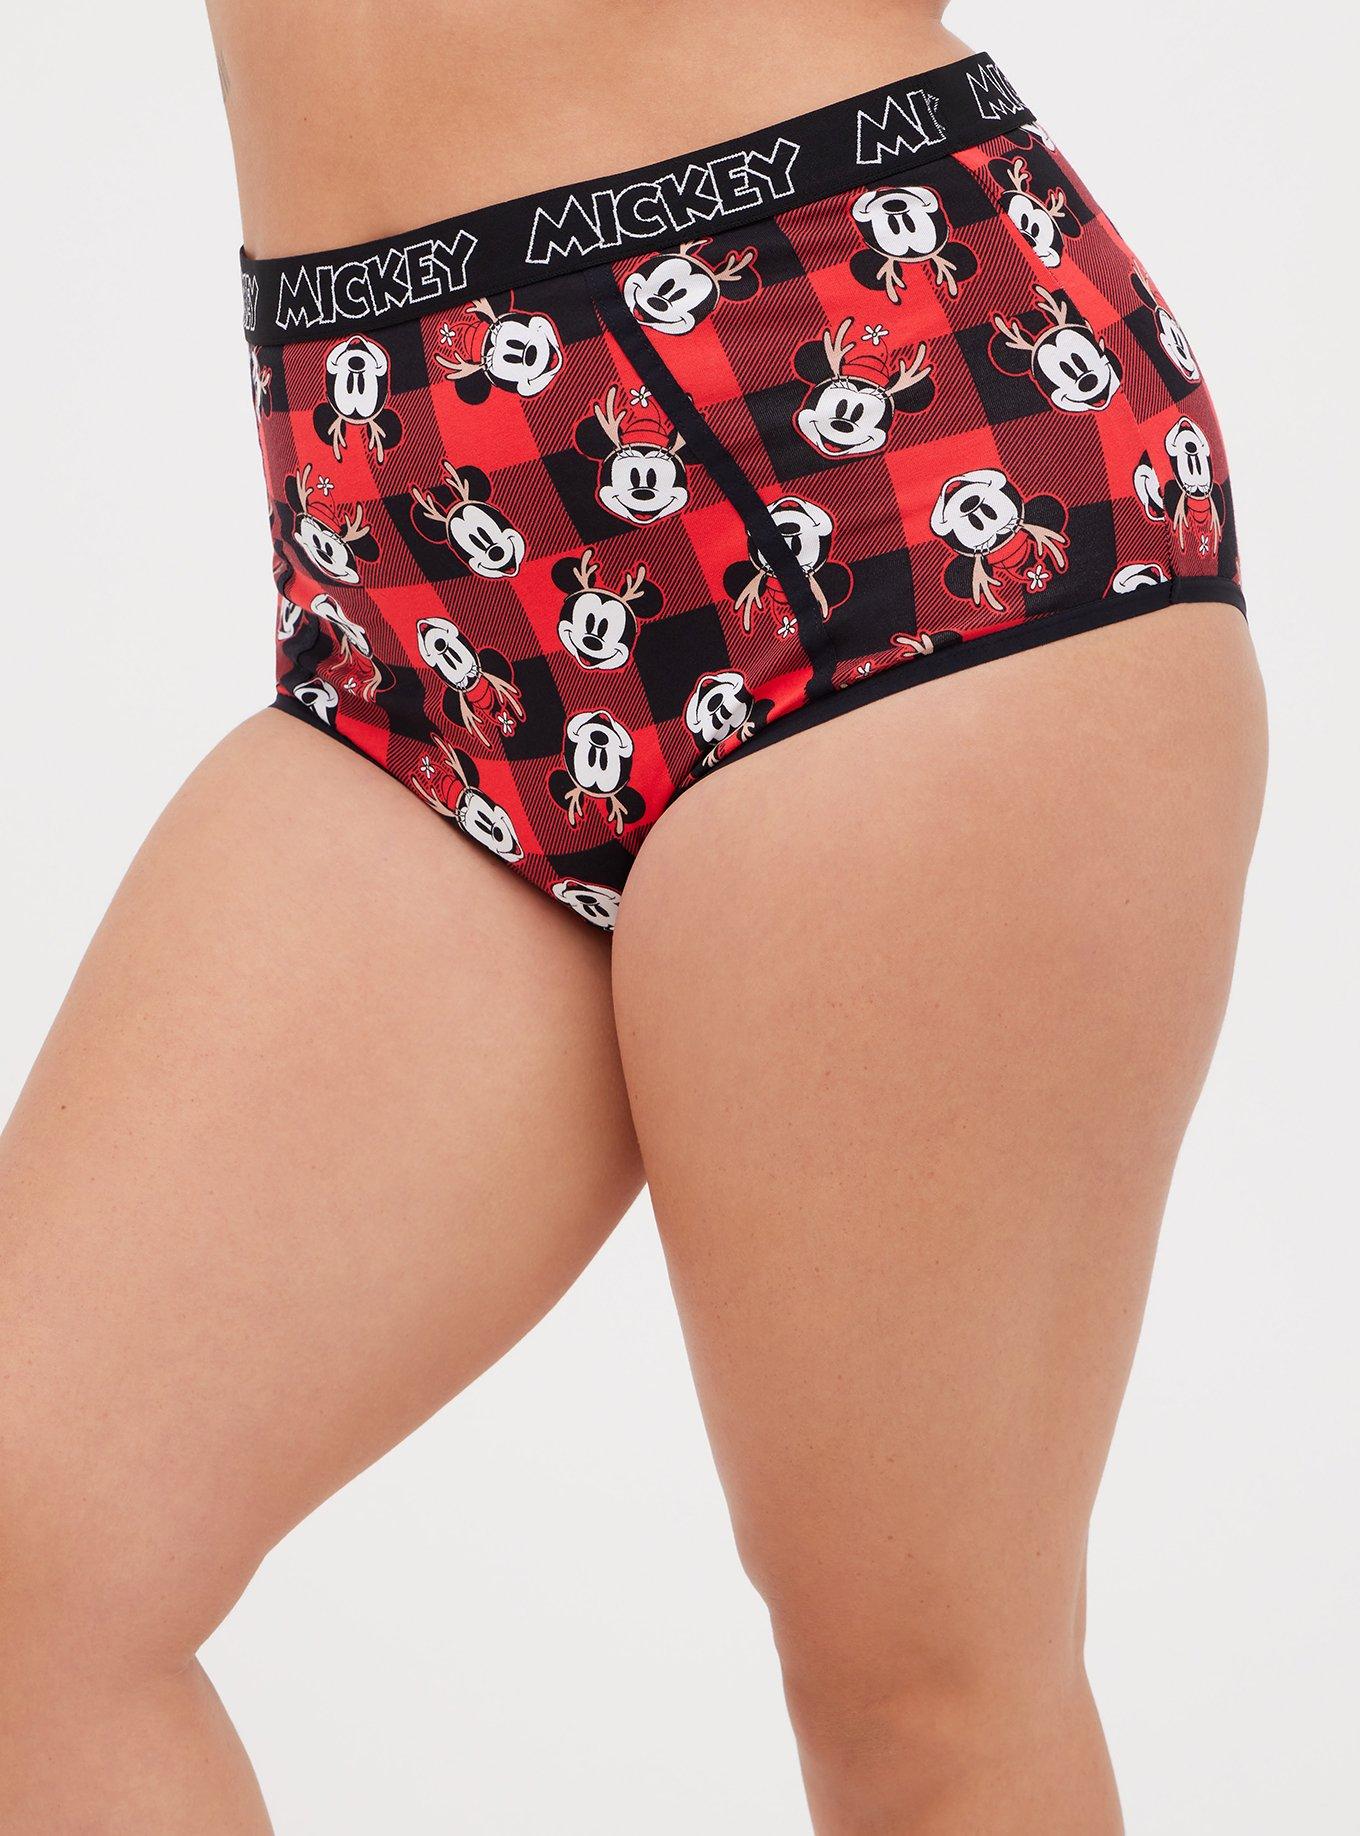 Torrid Disney Mickey Mouse Print Cotton Bralette Panty Pink Set Size 2 2X  NWT